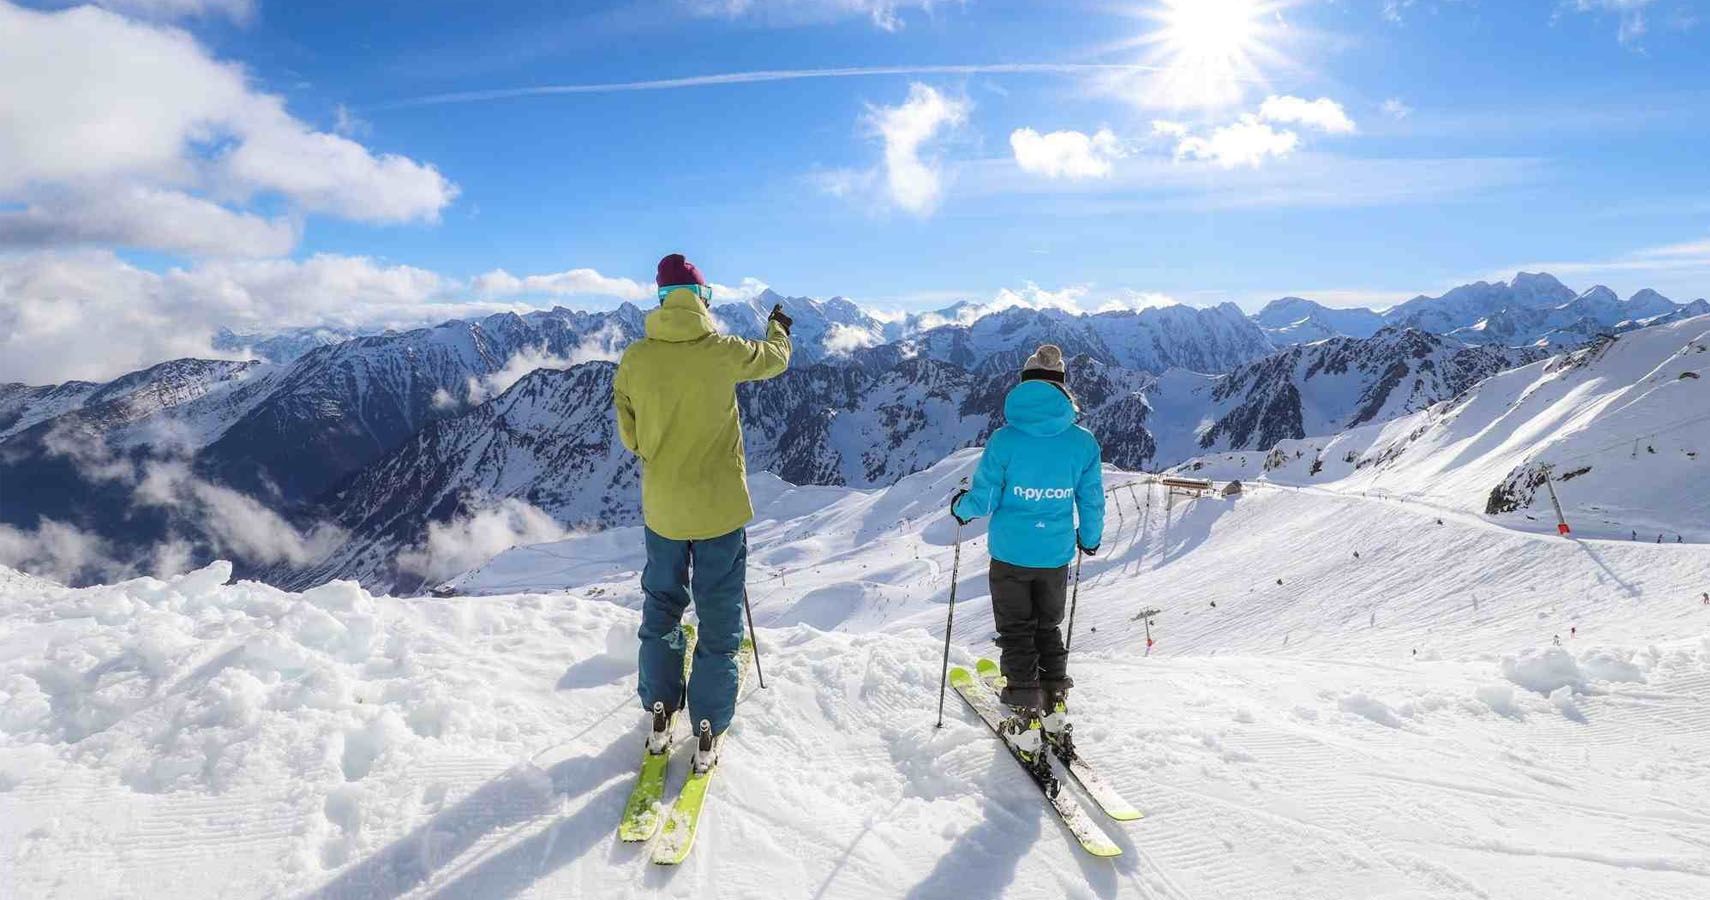 Fantasia de esqui oferta vem com montanha de esqui particular